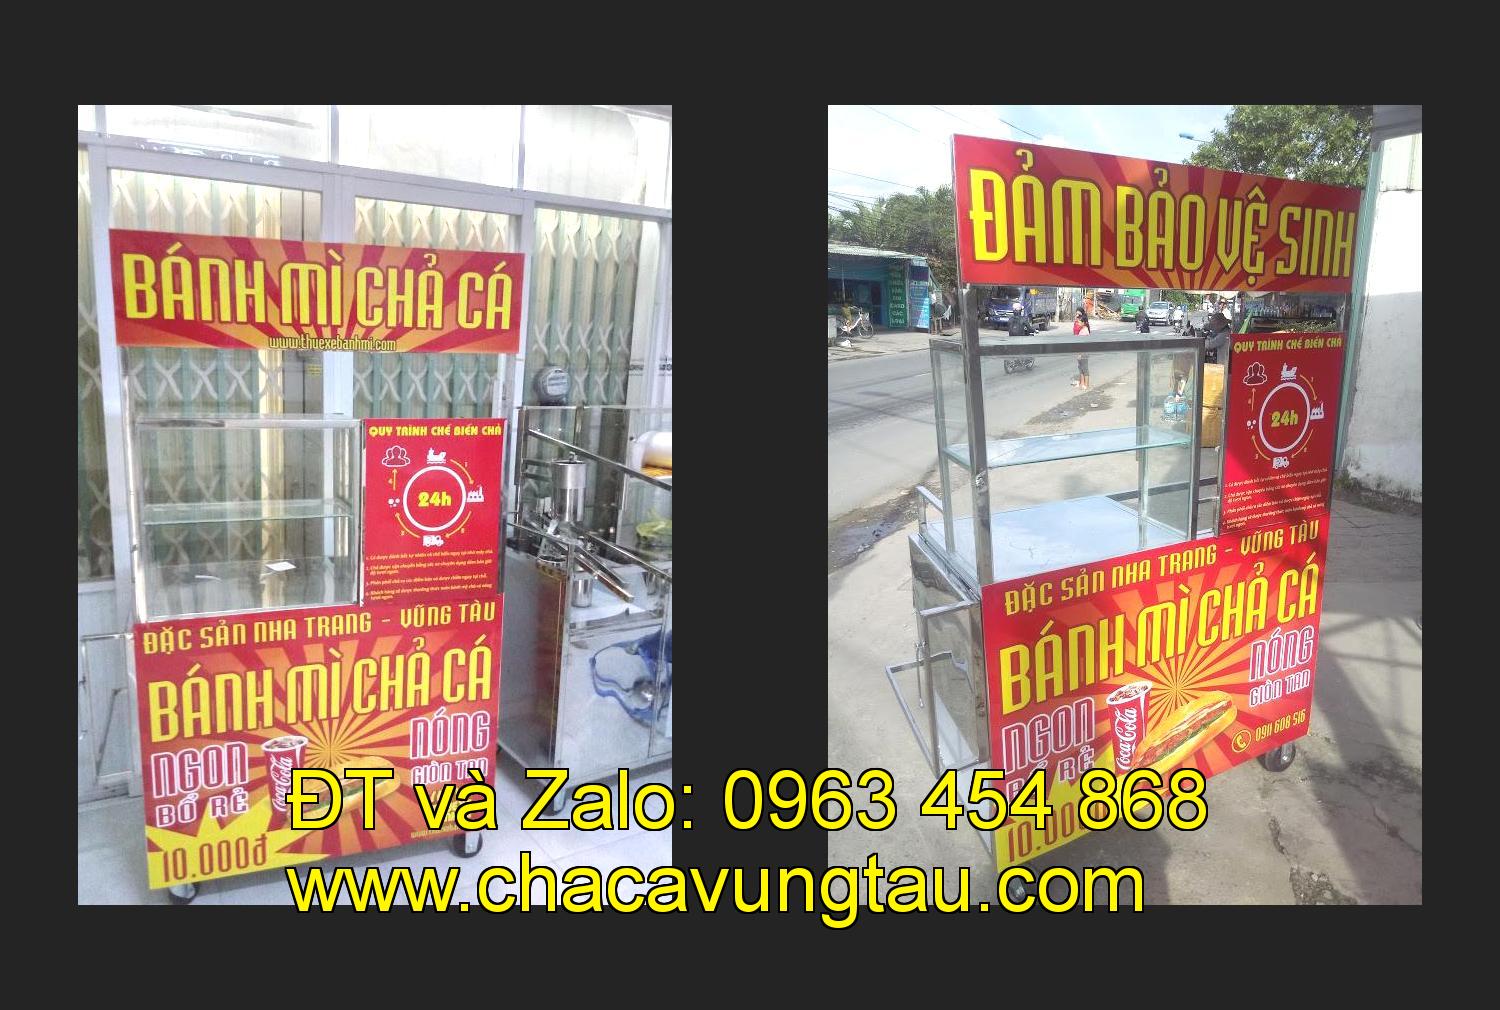 Bán xe bánh mì chả cá tại tỉnh Vĩnh Long